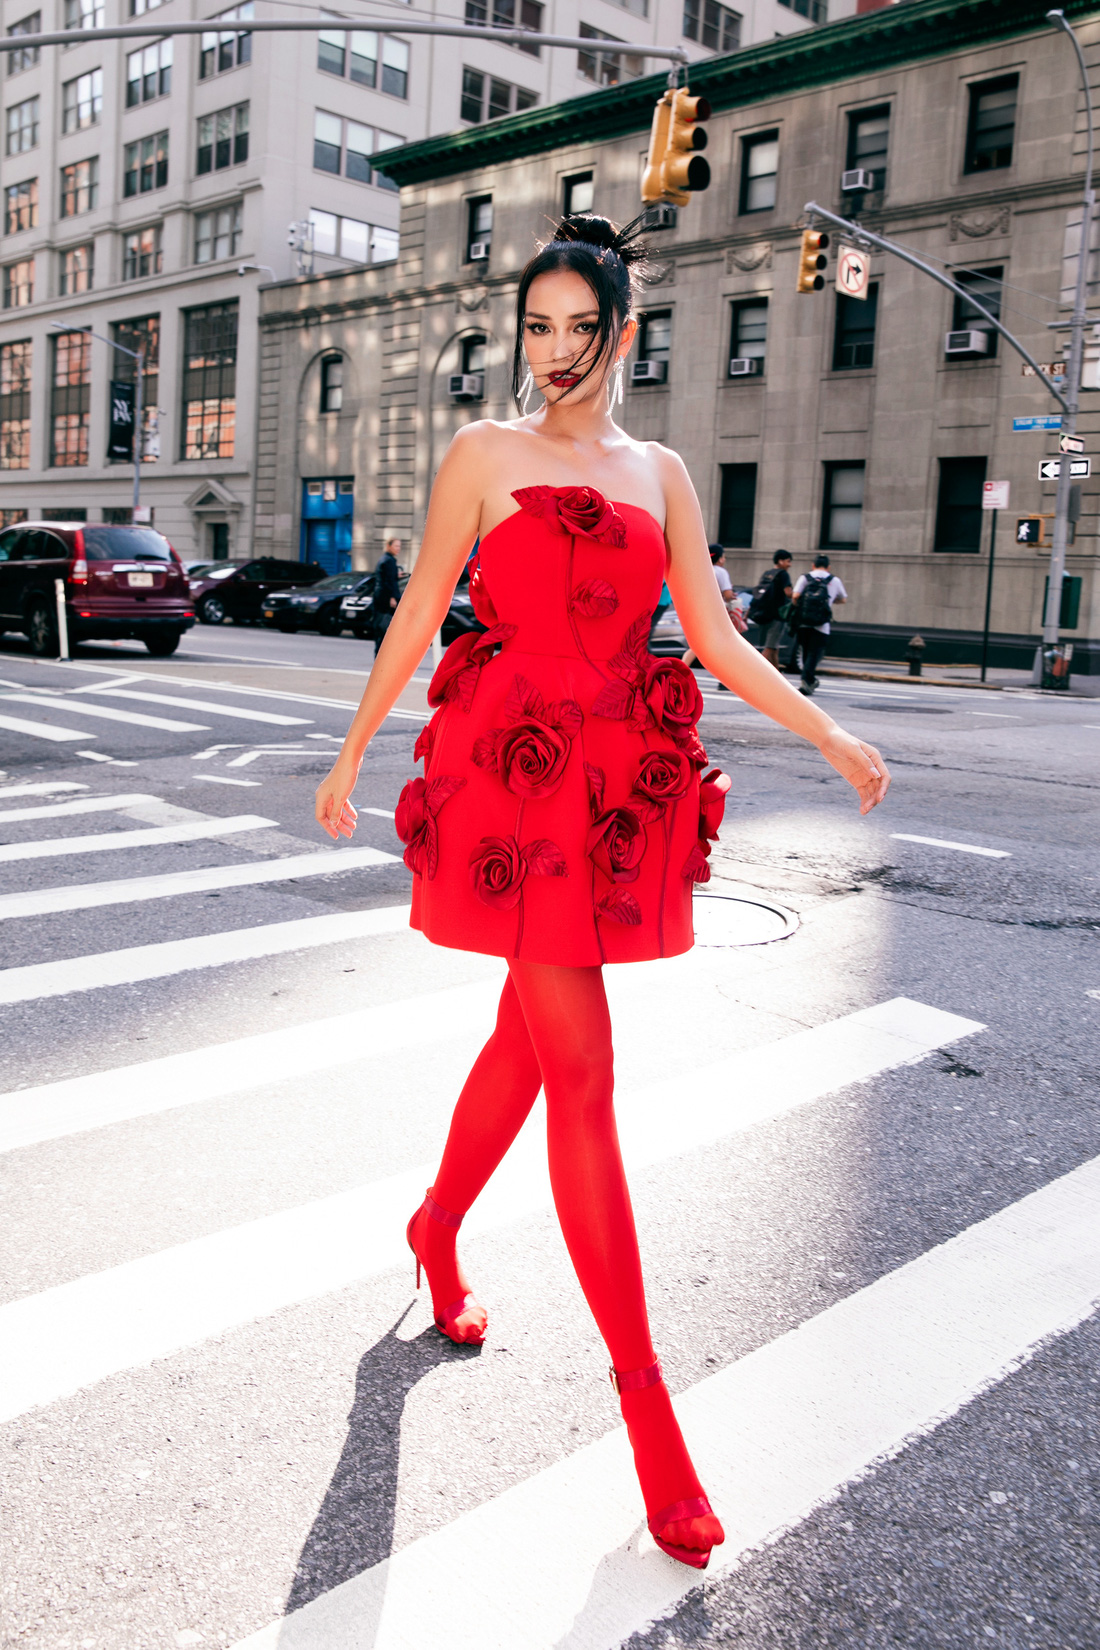 Hoa hậu Ngọc Châu năng động trên đường phố New York - Ảnh: KIẾNG CẬN TEAM